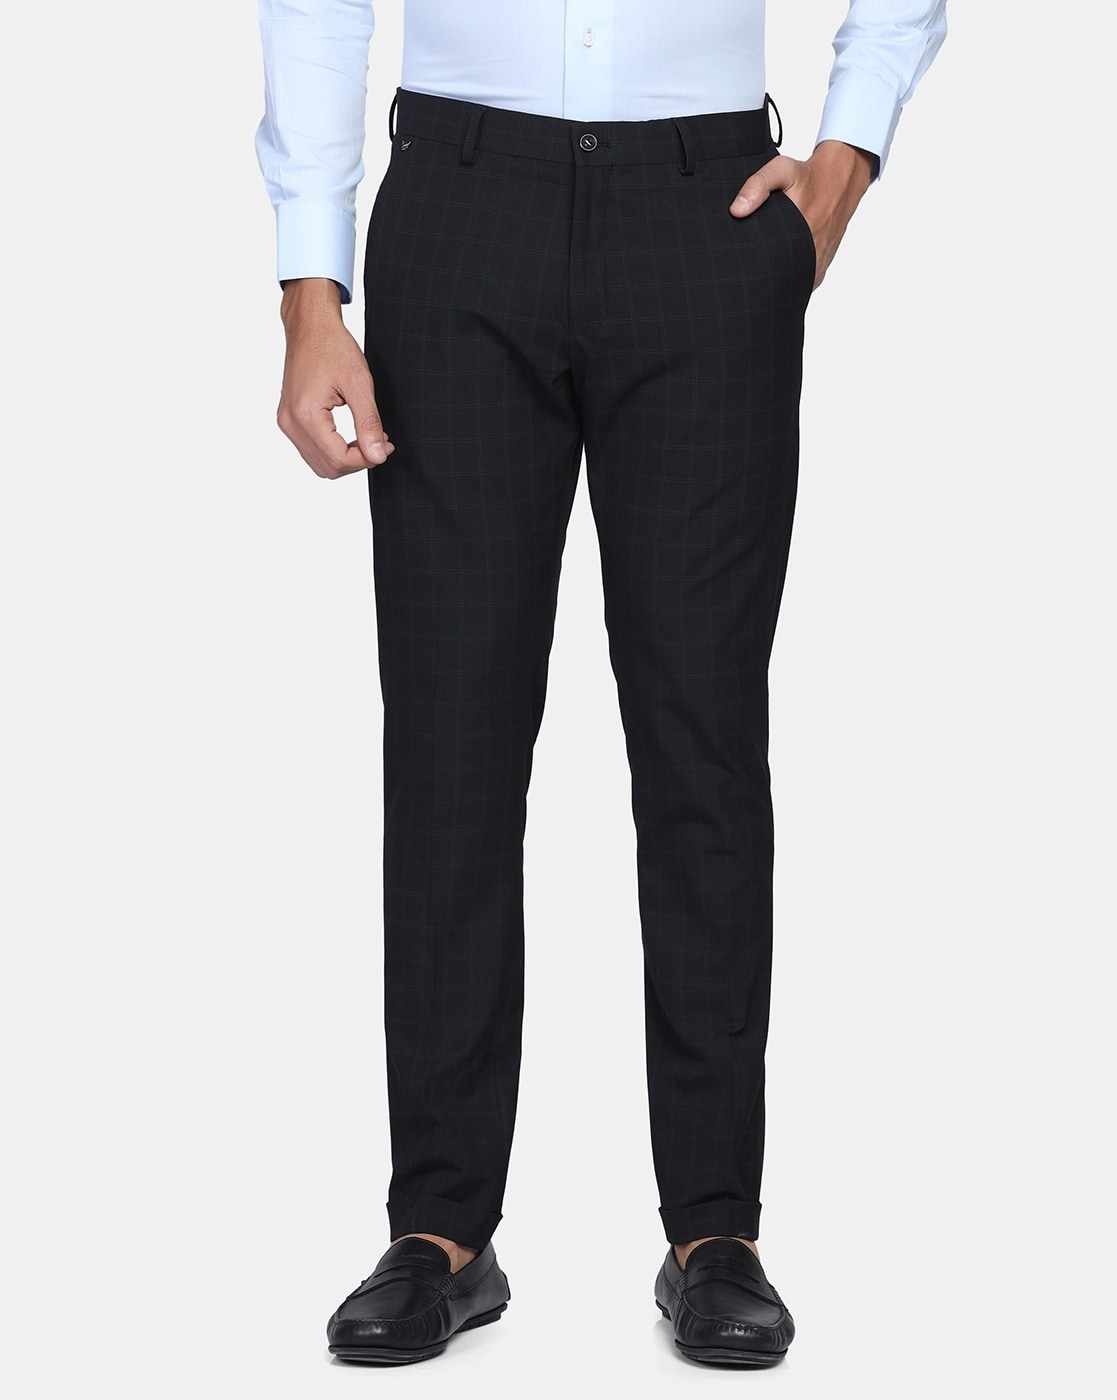 Buy BLACKBERRYS Checks Cotton Linen Blend Slim Fit Men's Trousers |  Shoppers Stop